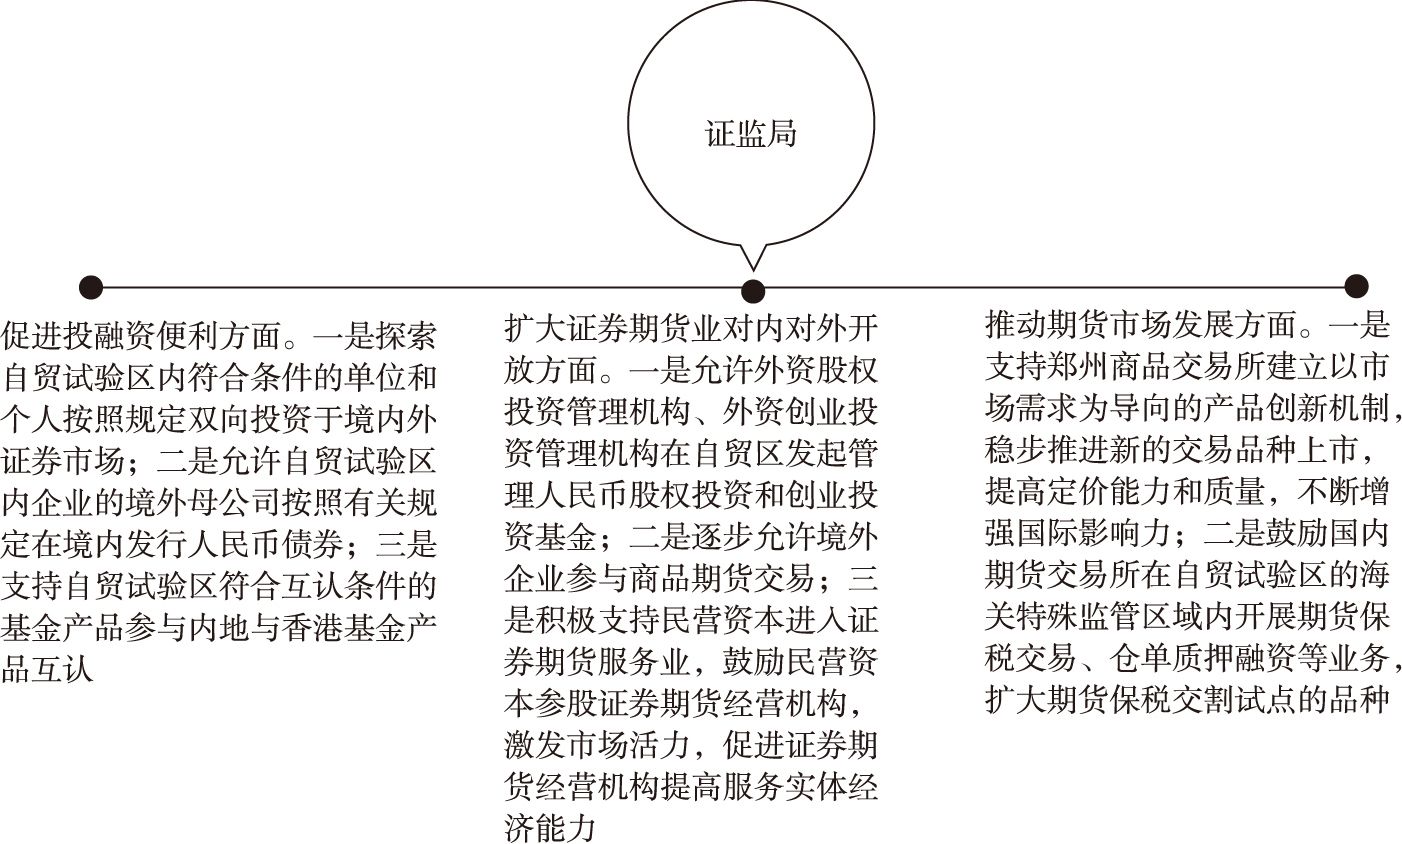 图15-5 证监局支持河南自贸区建设的主要意见